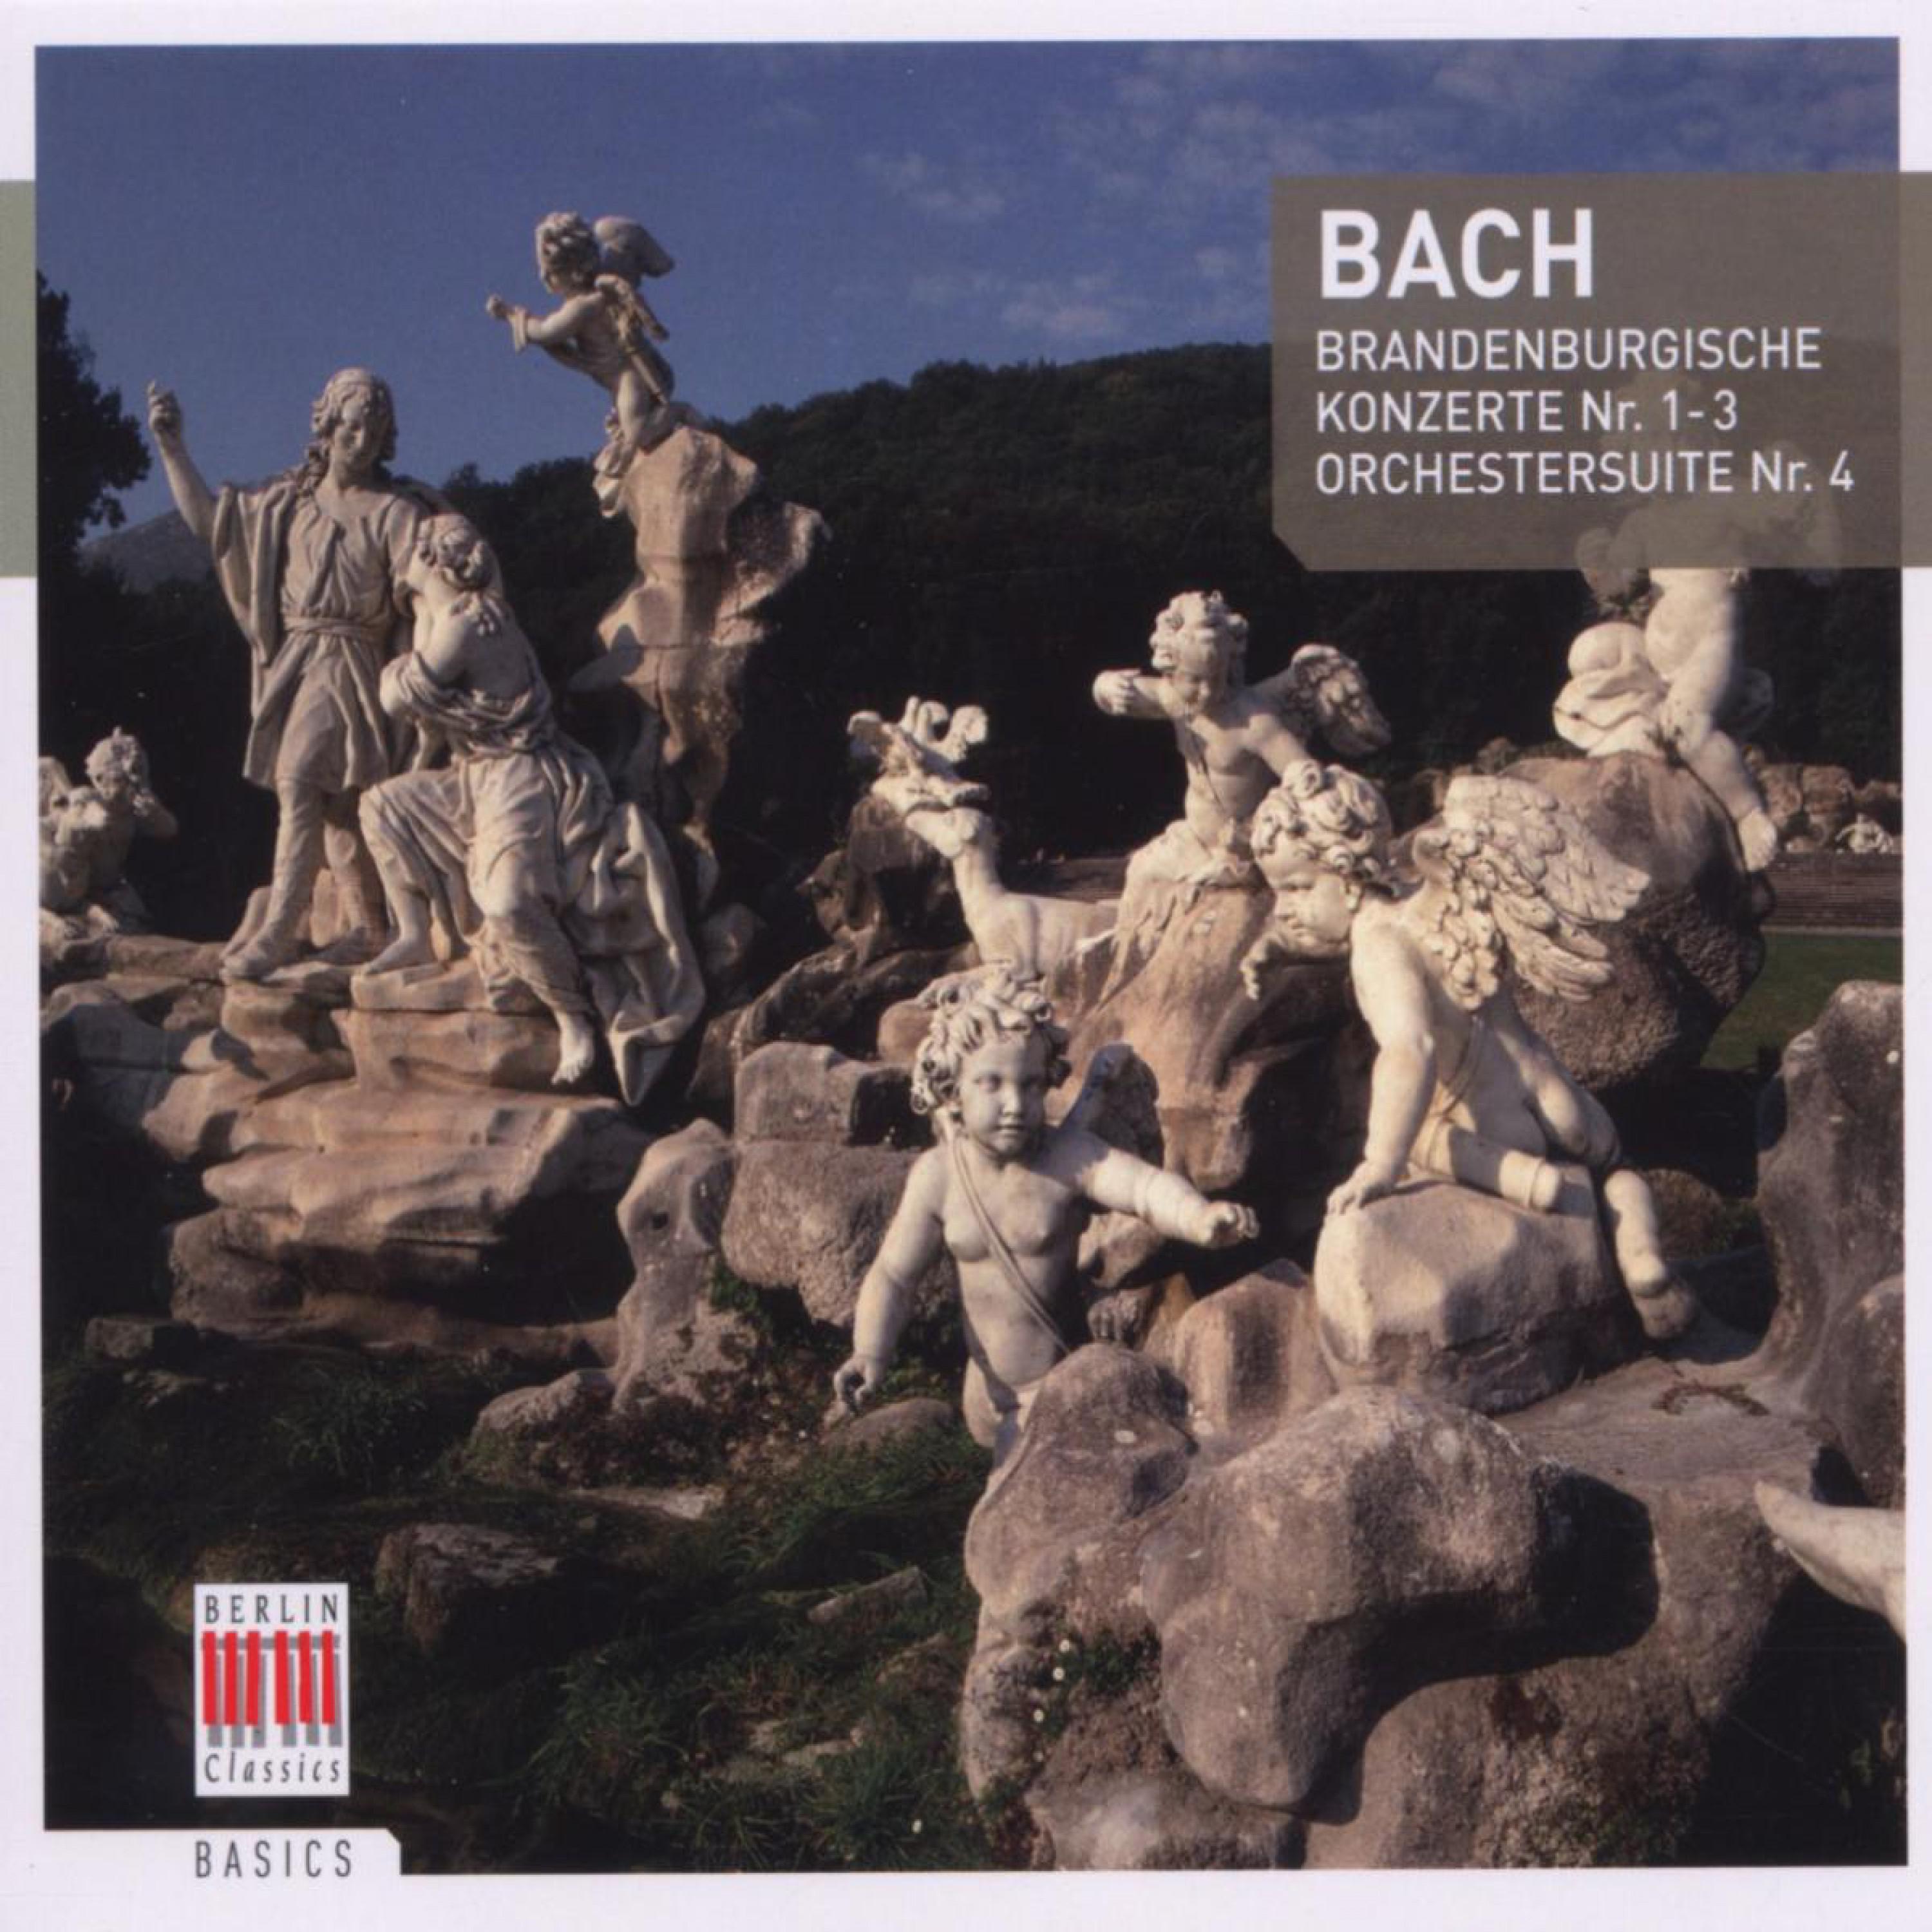 Brandenburg Concerto No. 1 in F Major, BWV 1046: I. Allegro non troppo